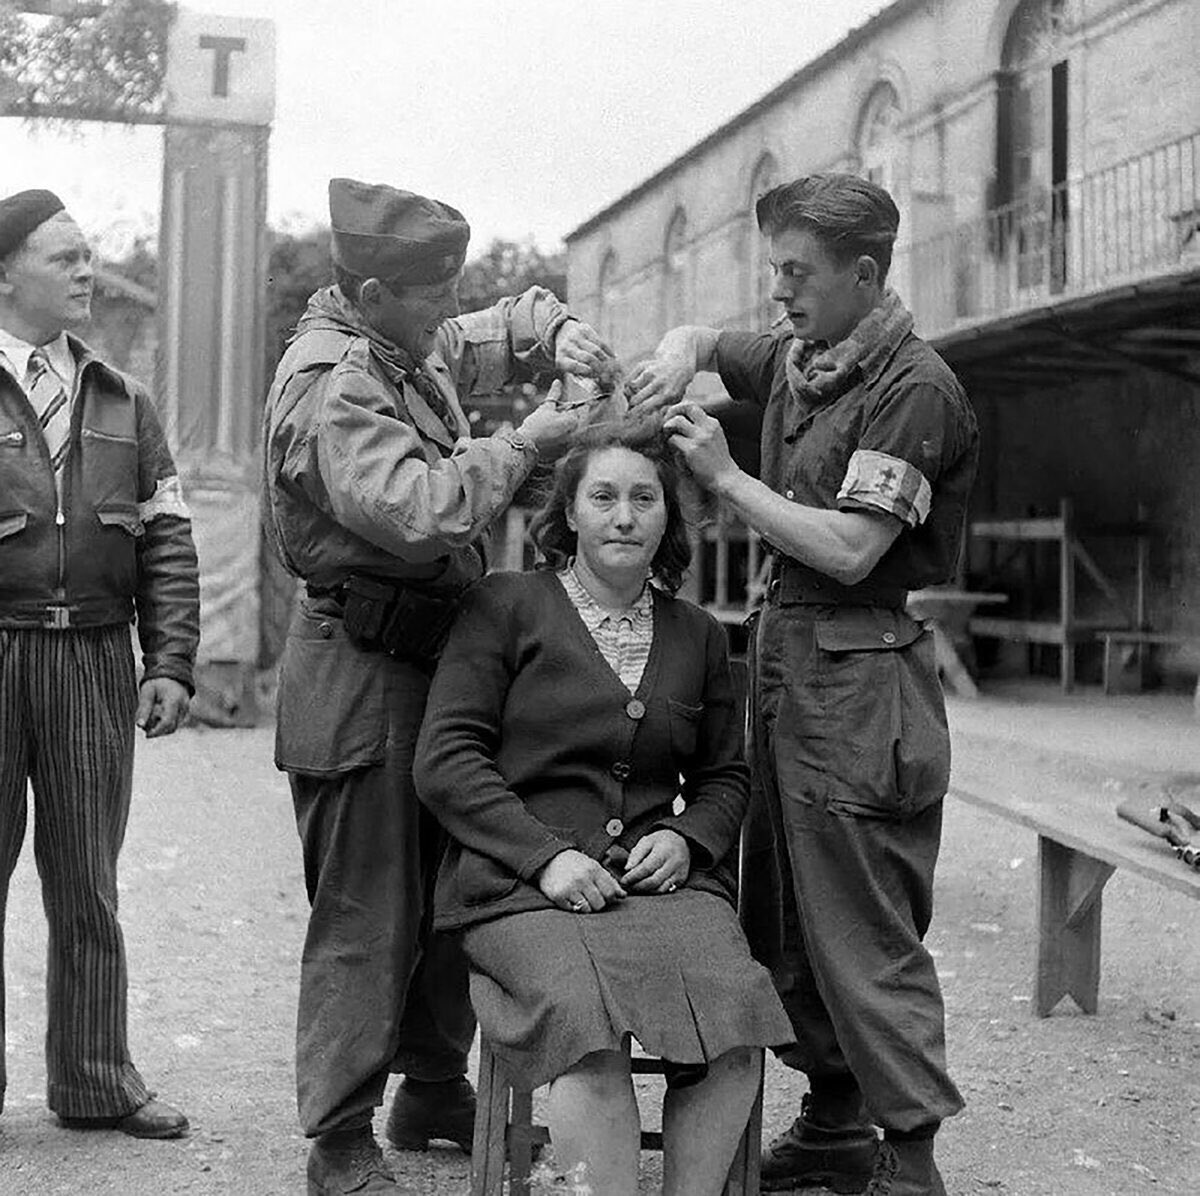 На архивные фотографии женщин, сотрудничавших с нацистами, даже страшно смотреть: они подвергались публичному позору. Как минимум их остригали наголо.